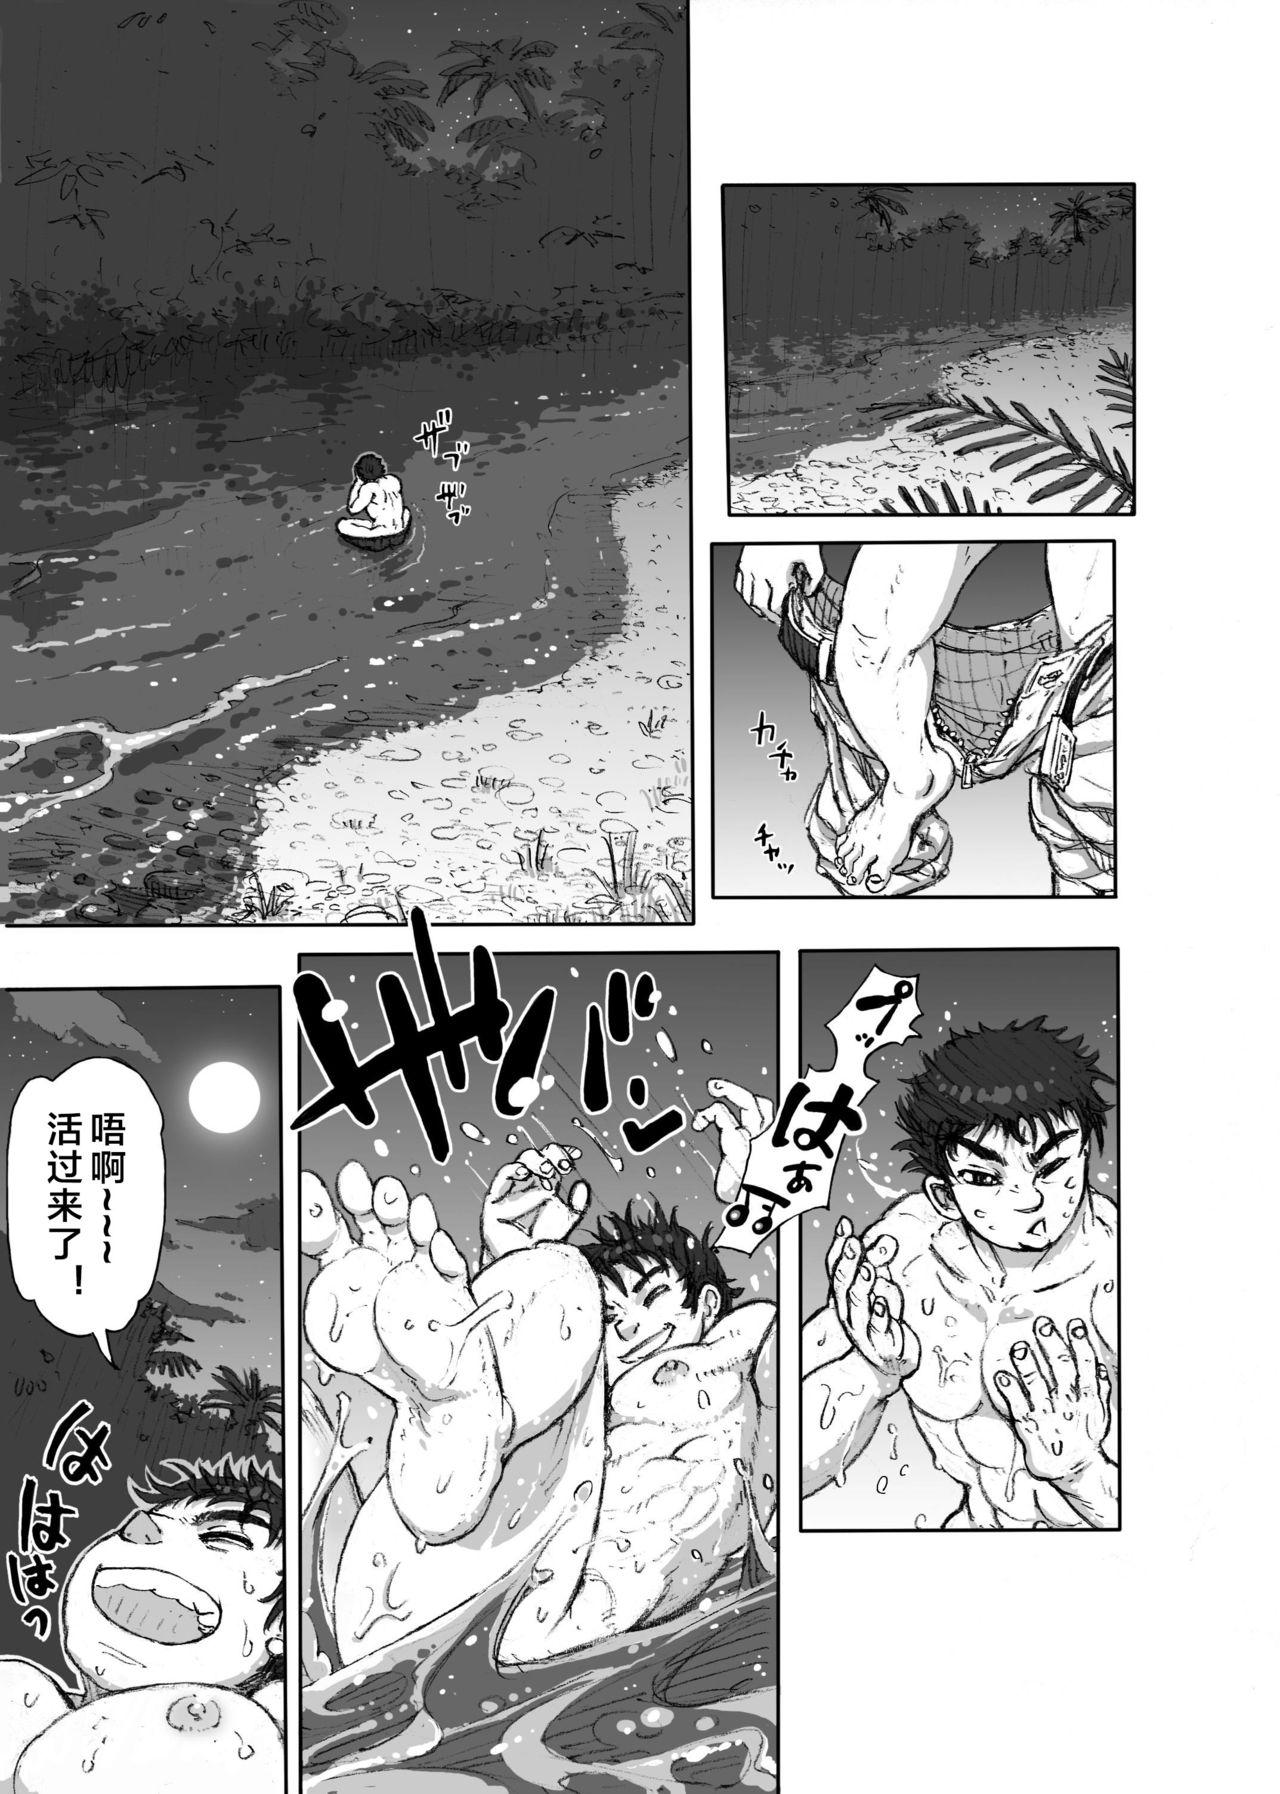 Stepdad Hepoe no Kuni kara 1 - Mizu no Gakusha Sensei, Hi no Buzoku no Saru ni Hazukashimerareru no Maki Czech - Page 5